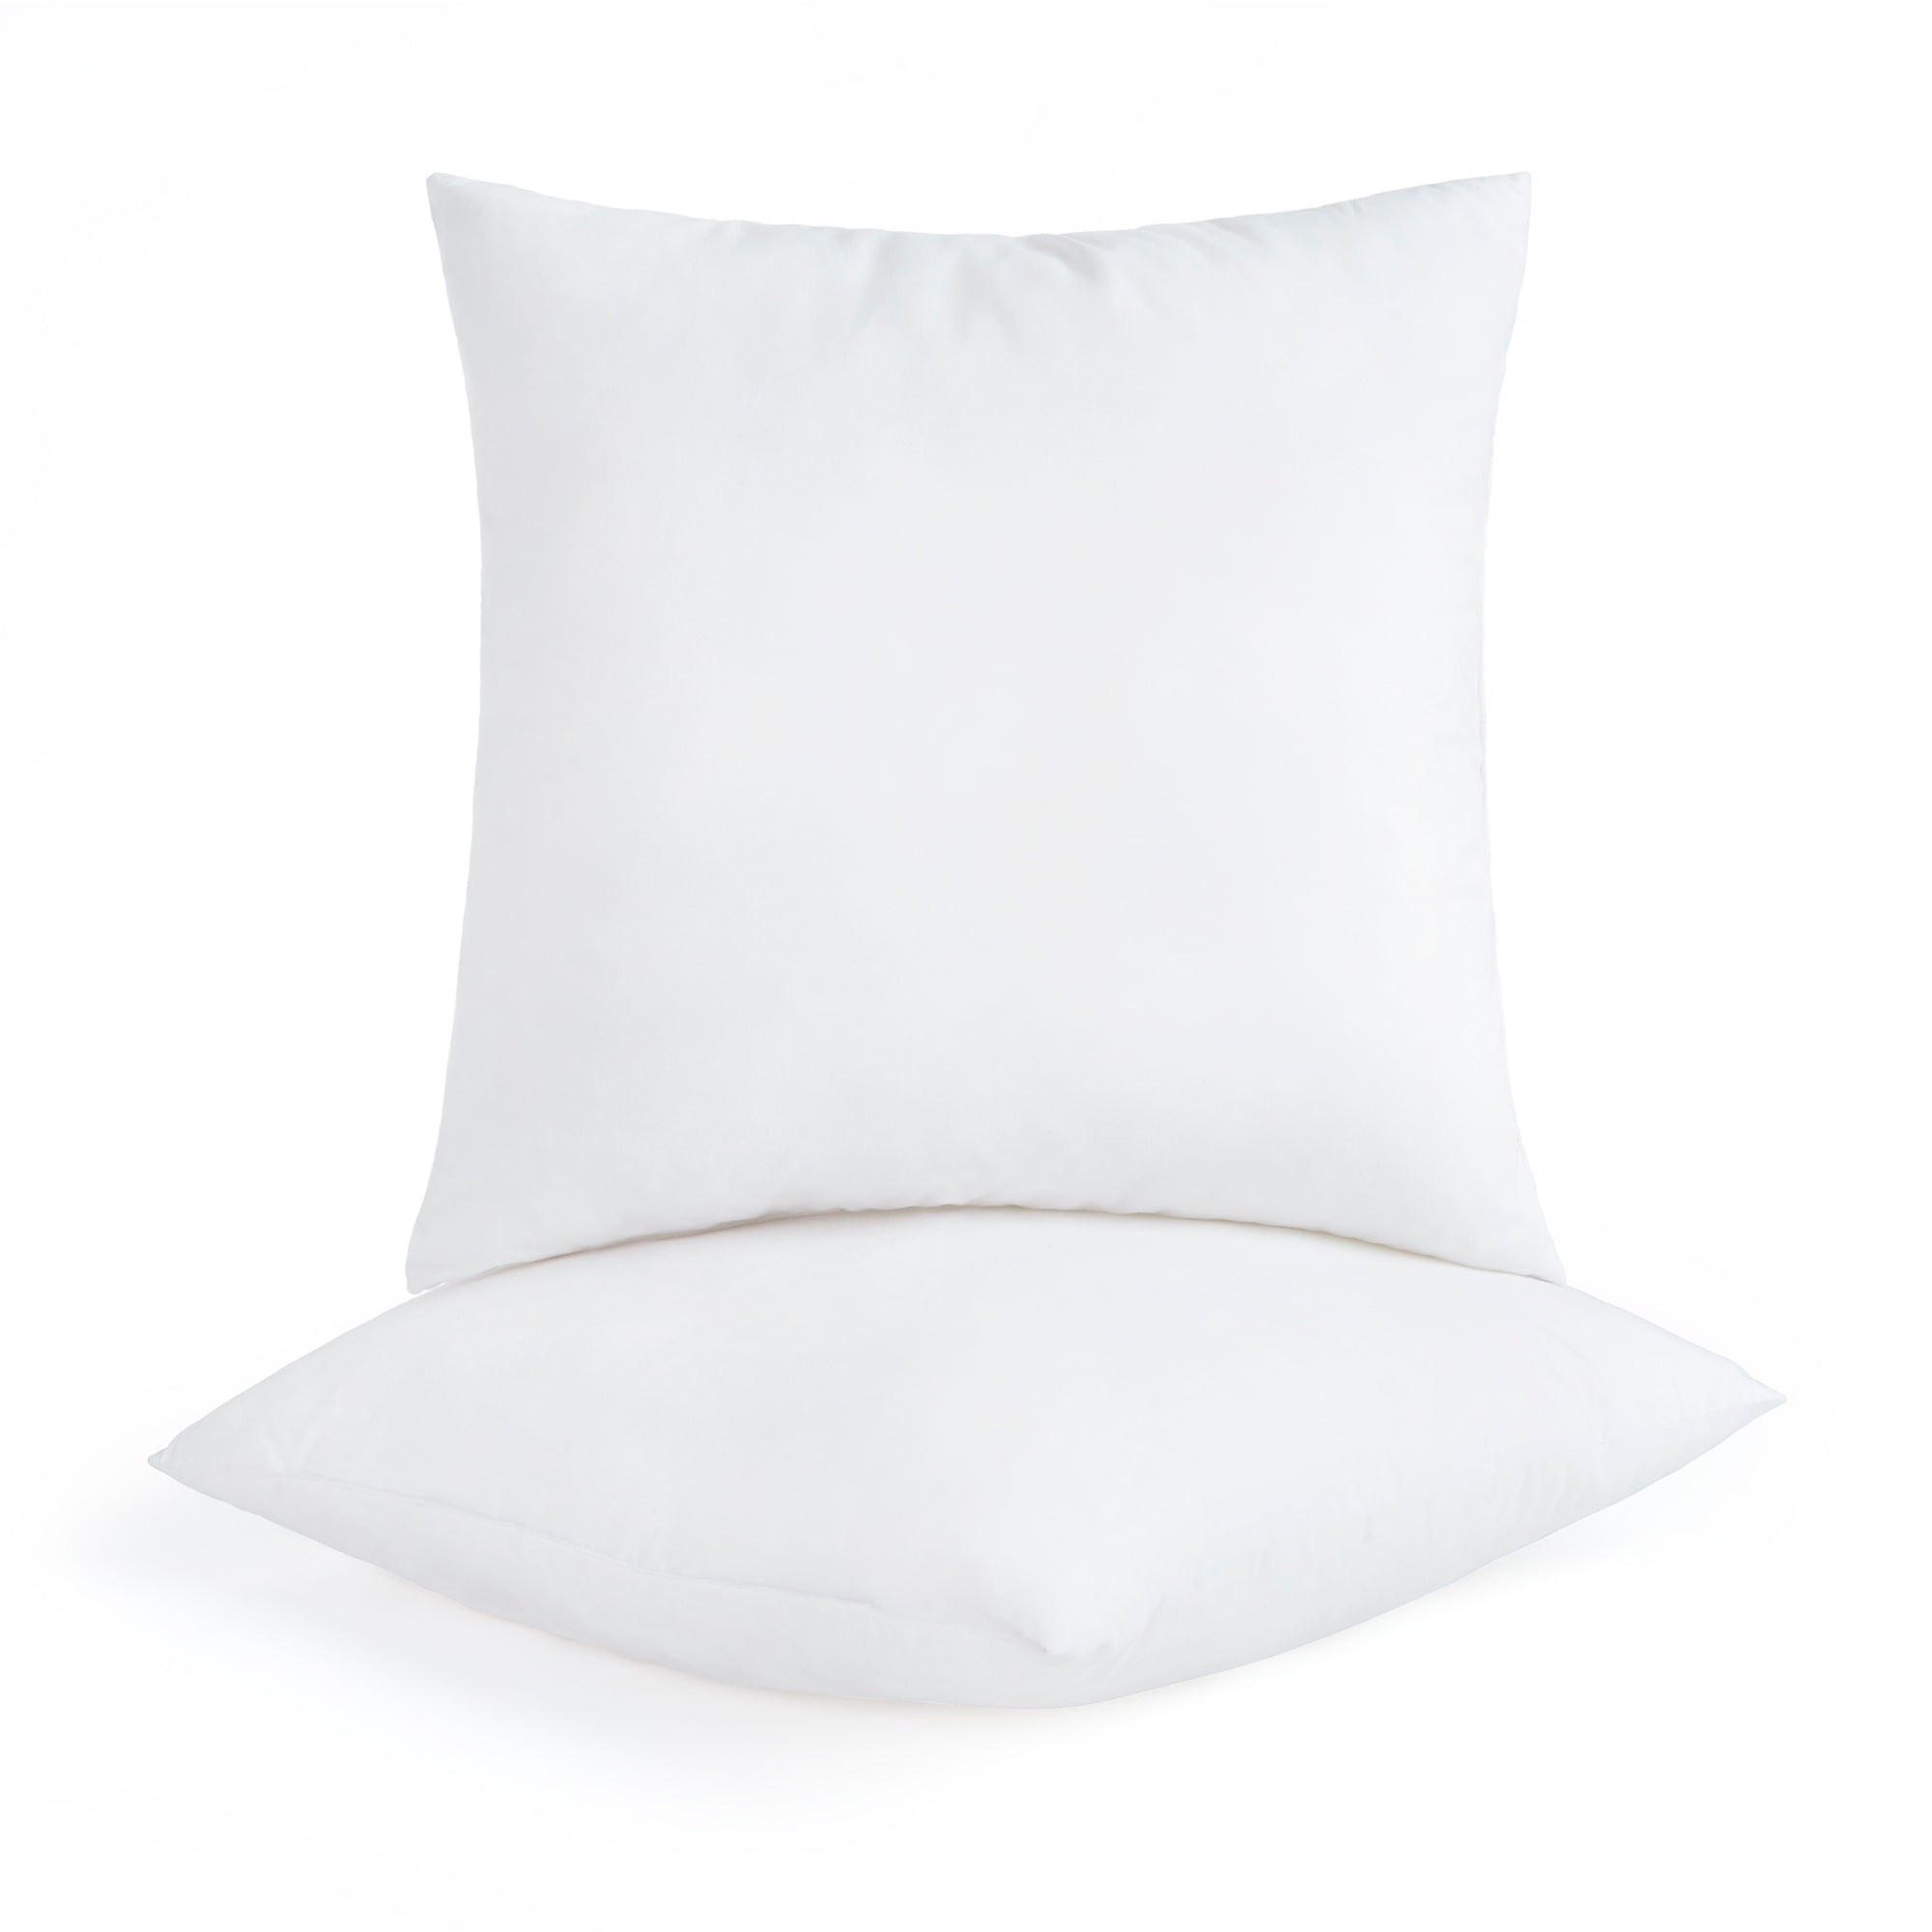 14 x 14 Polyester Fiber Pillow Insert, Bosal #231BP